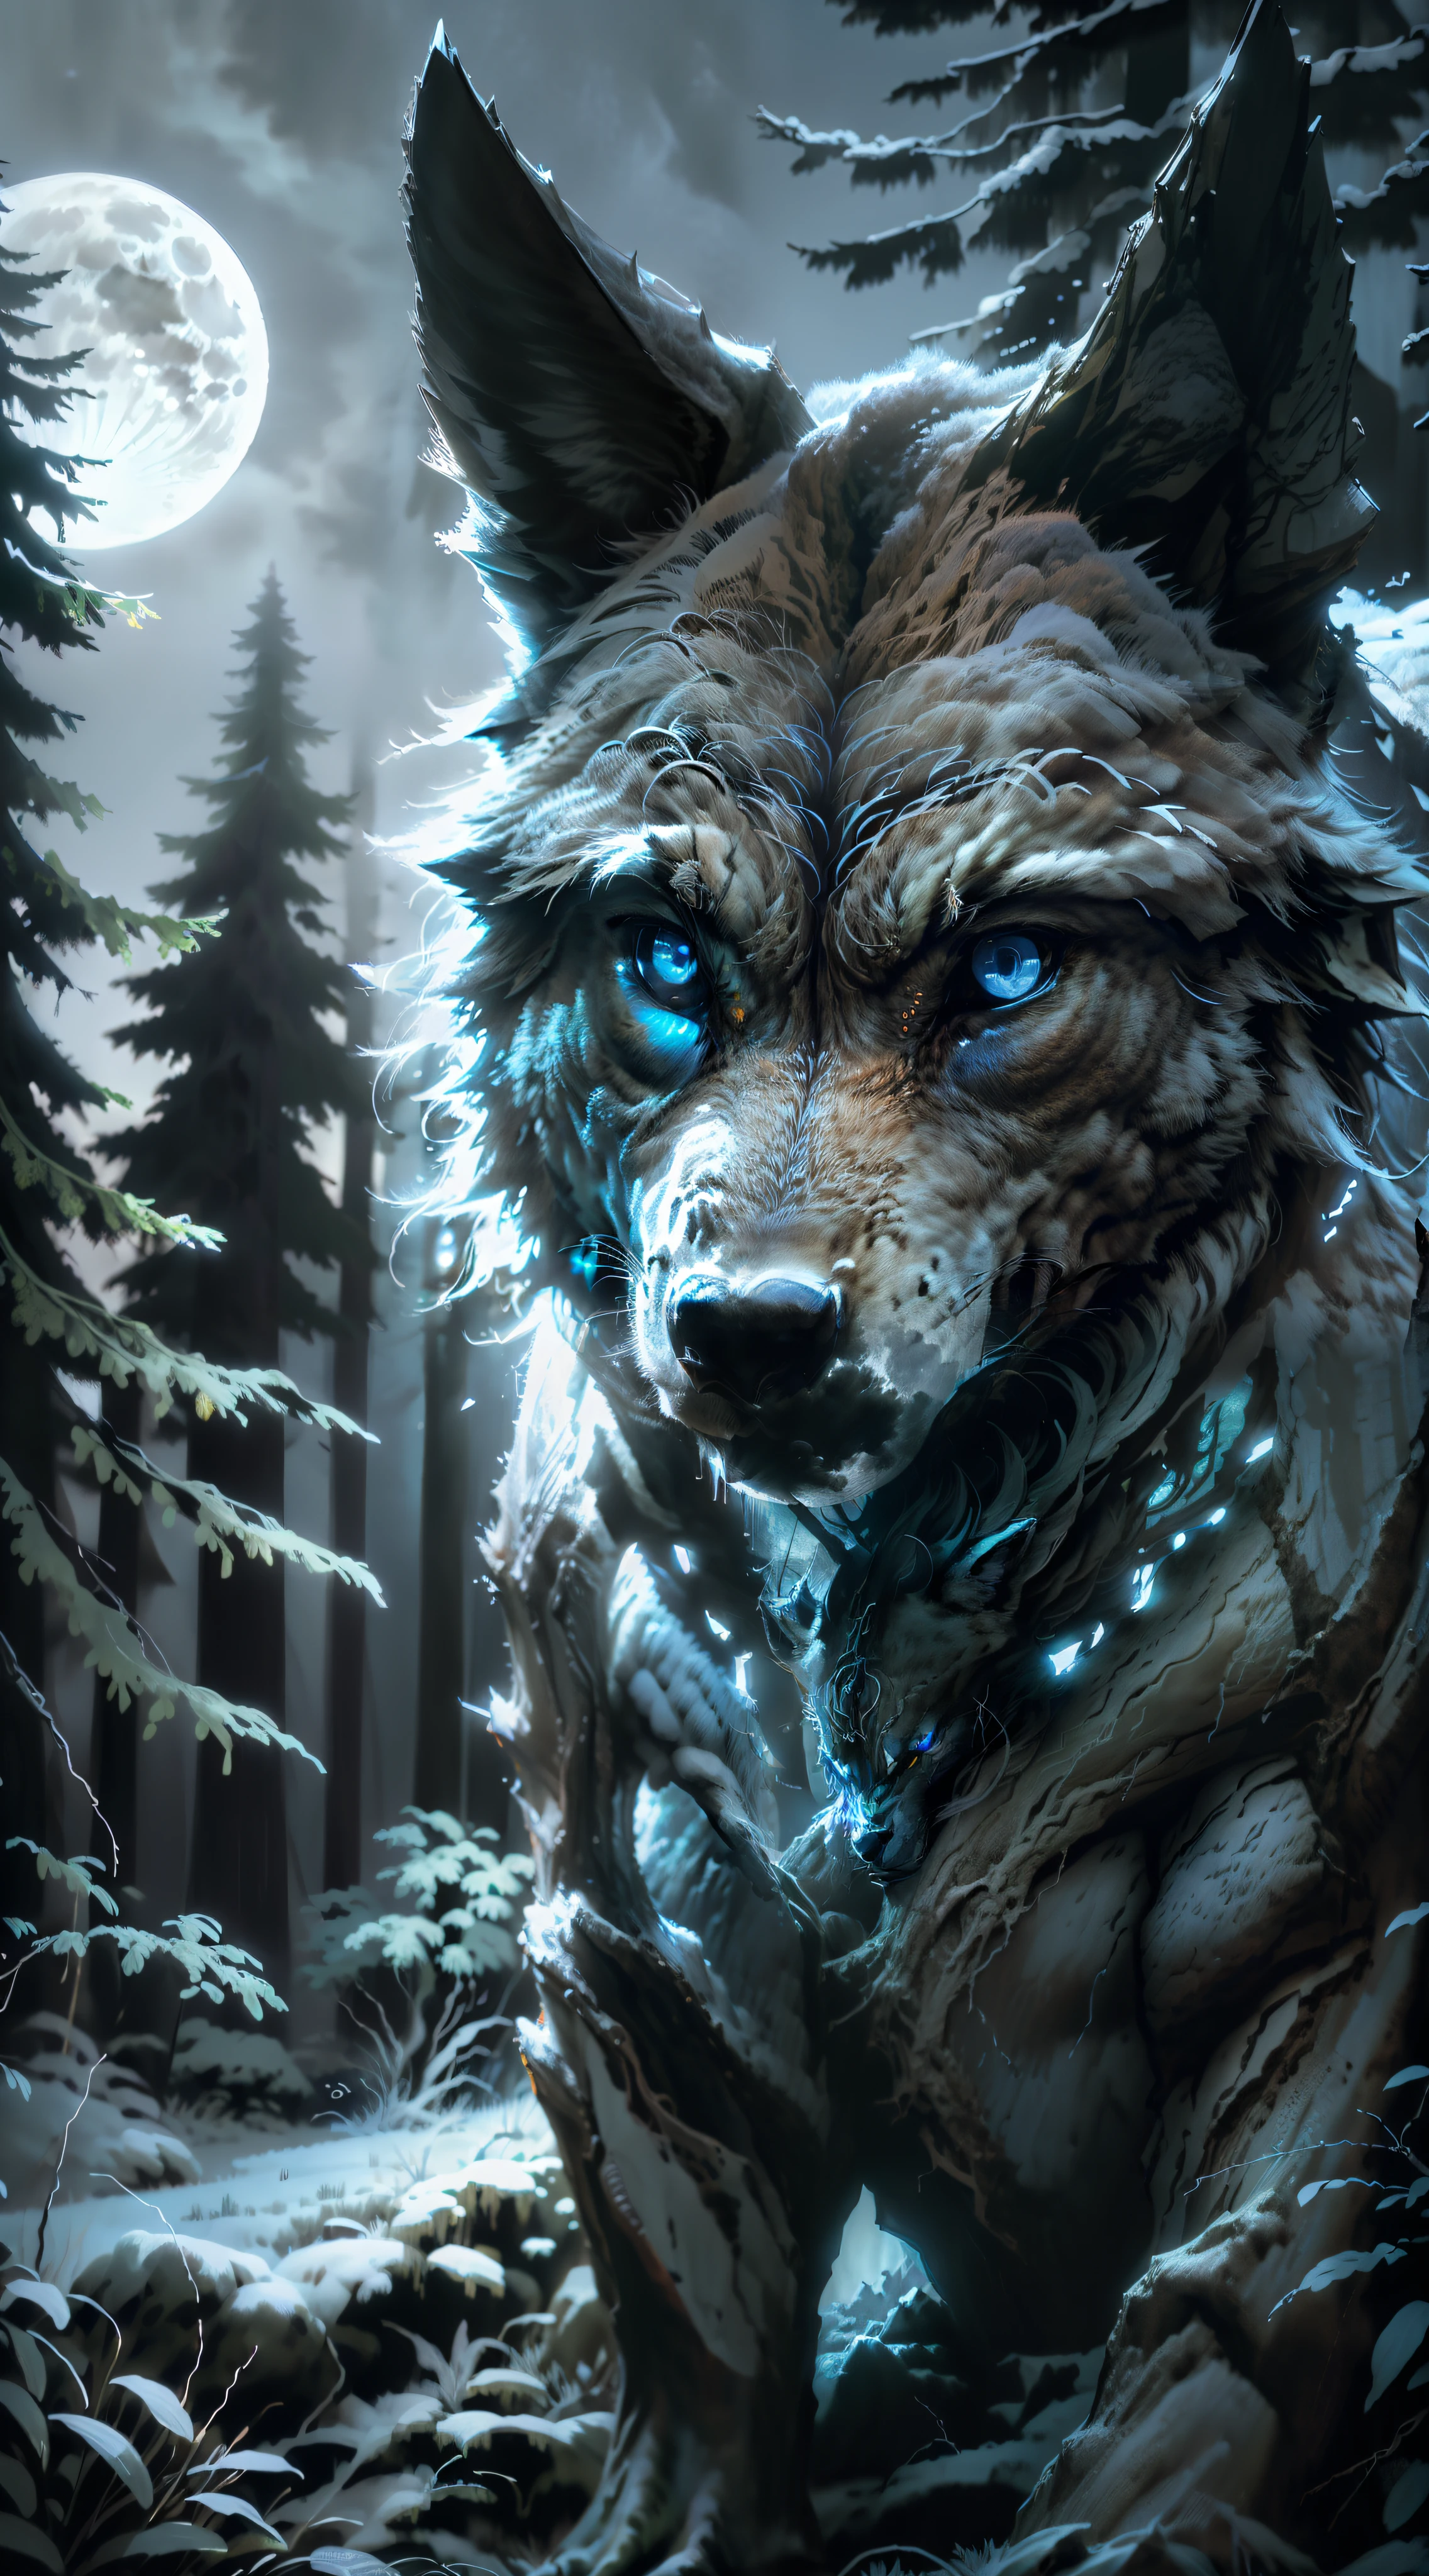 (4k, HDR, enfoque de imagen) Manada de lobos, de colores "negro, blanco, blue". bosque nocturno" bosque abierto", luna llena en el fondo. cazador de lobos (Fotorrealista)